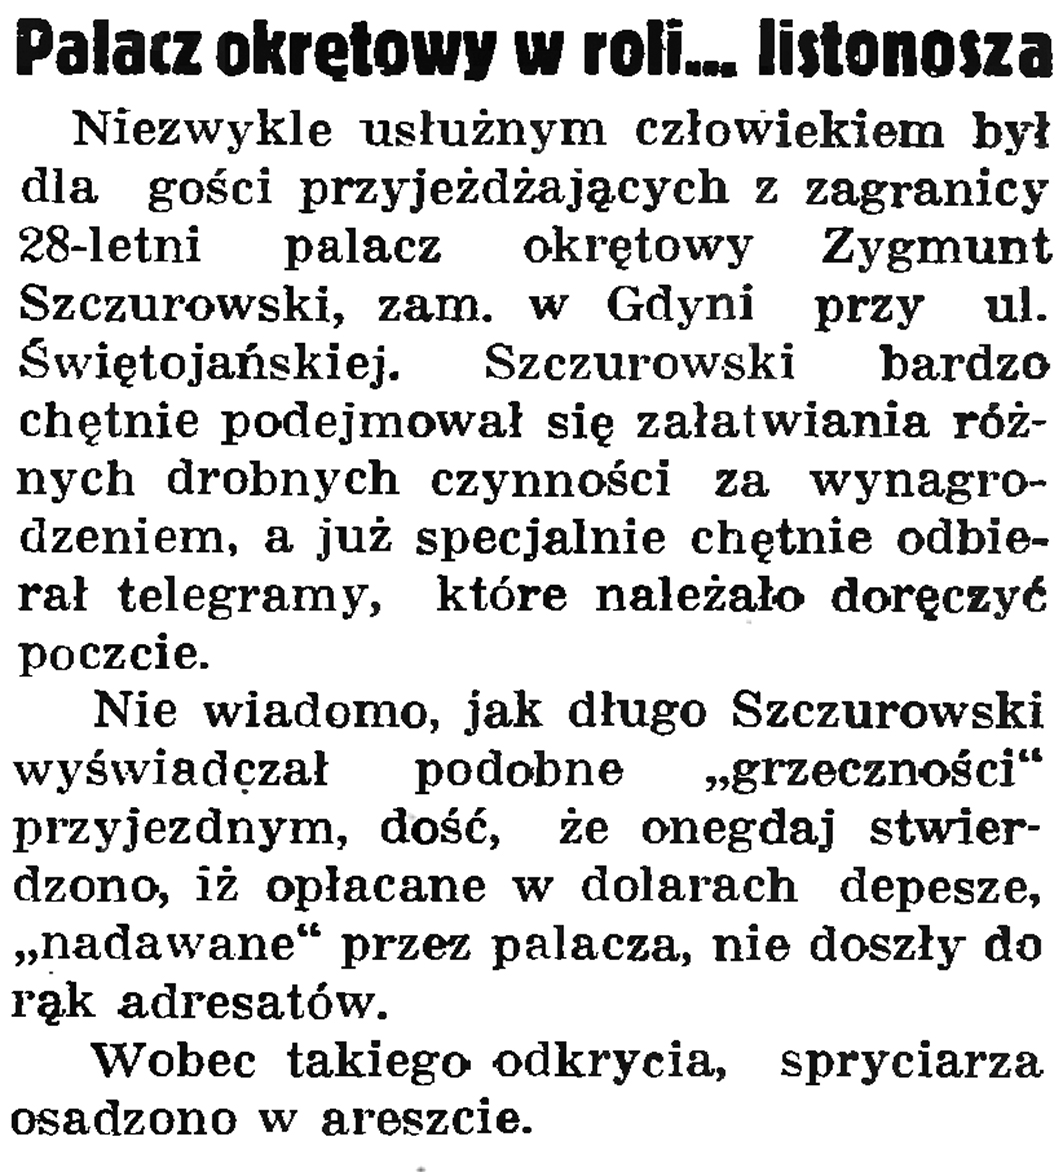 Palacz okrętowy w roli ... listonosza // Gazeta Gdańska. - 1937, nr 152, s. 8